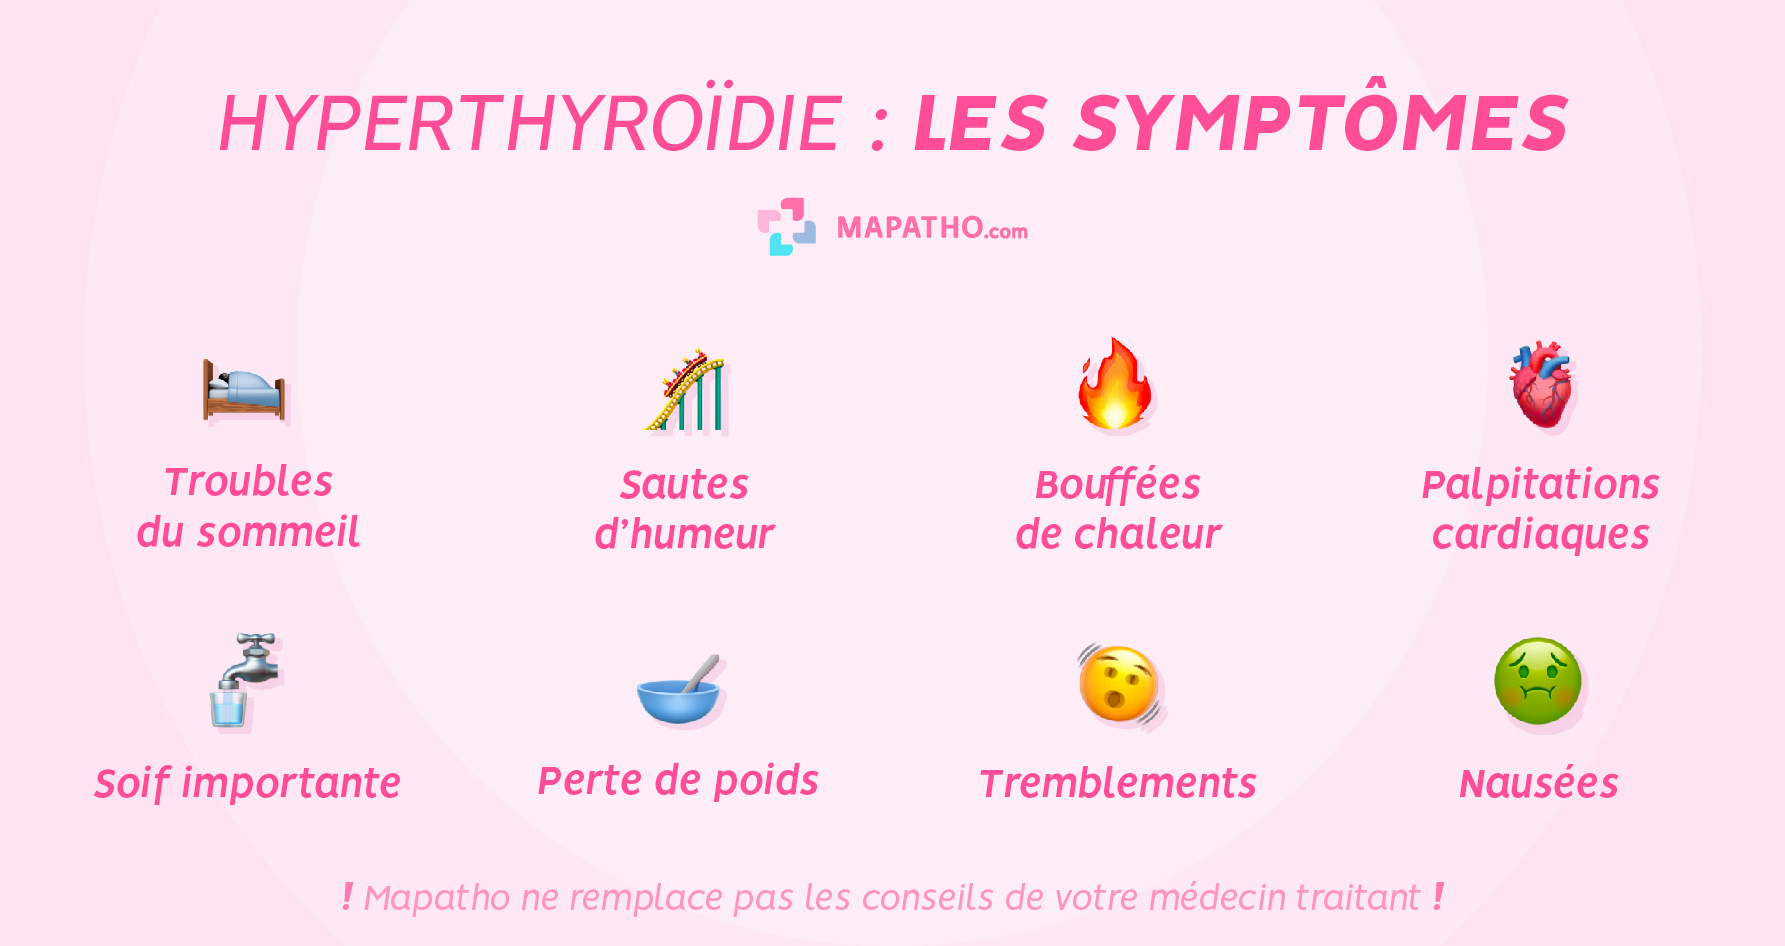 Les symptômes de l'hyperthyroïdie